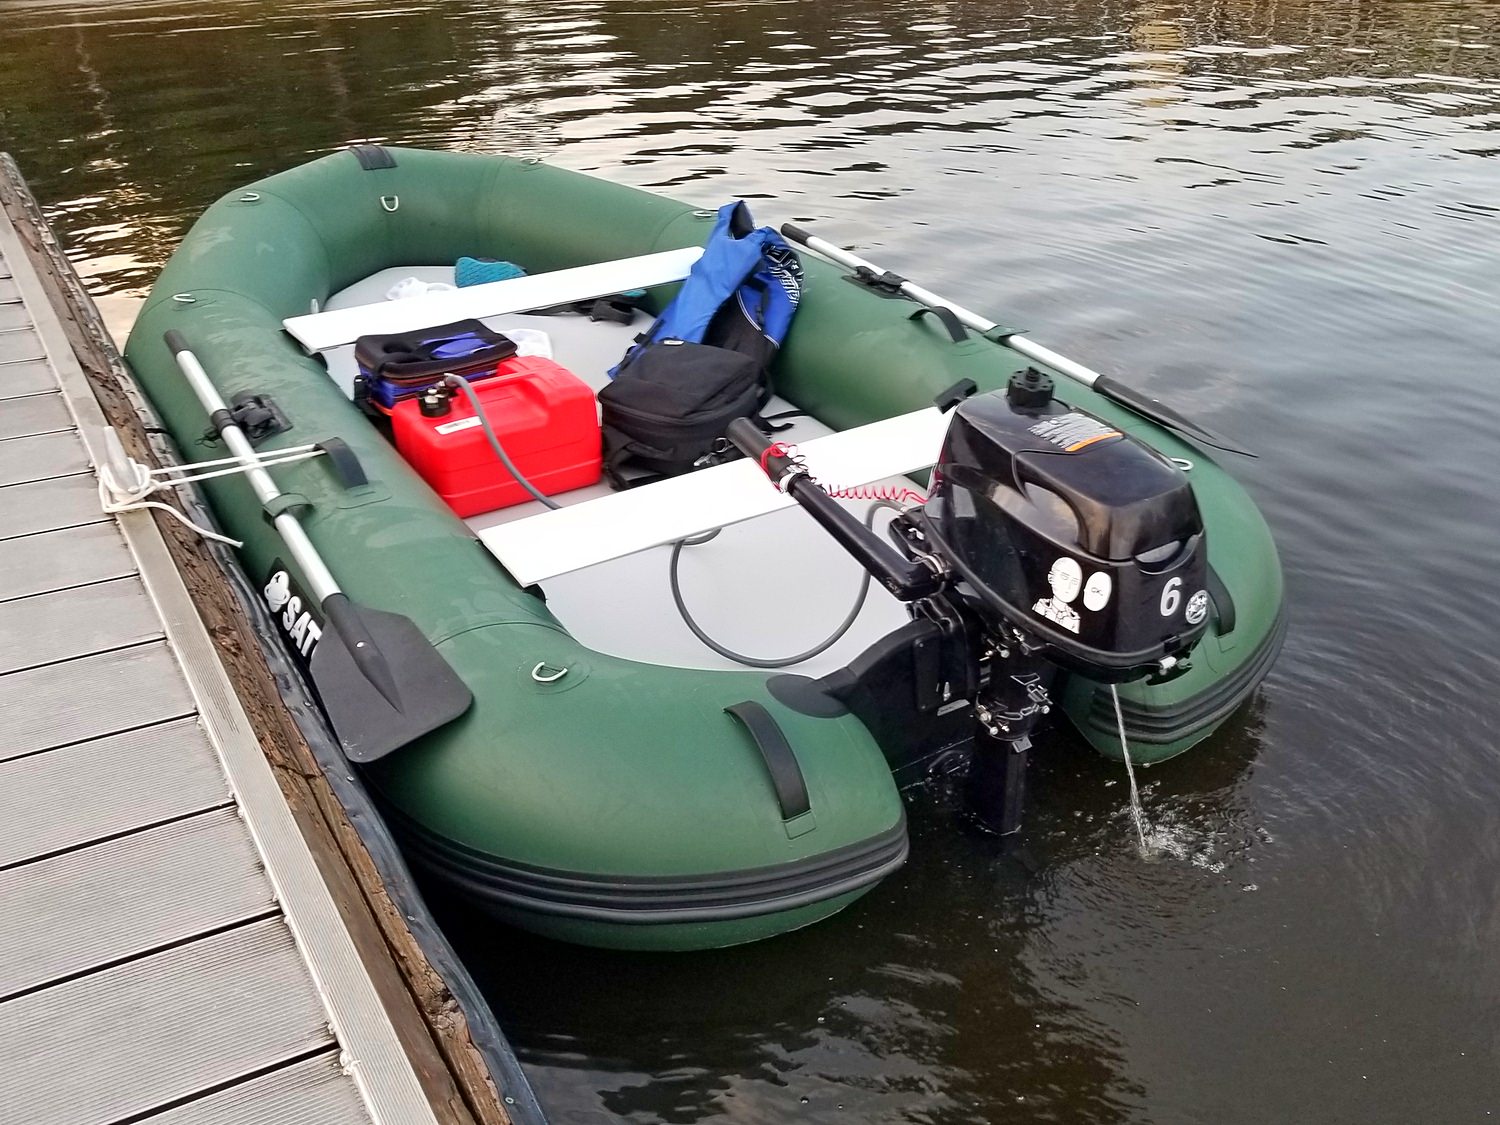 https://www.boatstogo.com/images/detailed/6/Inflatable-Motor-Raft-MRF330-01.jpg